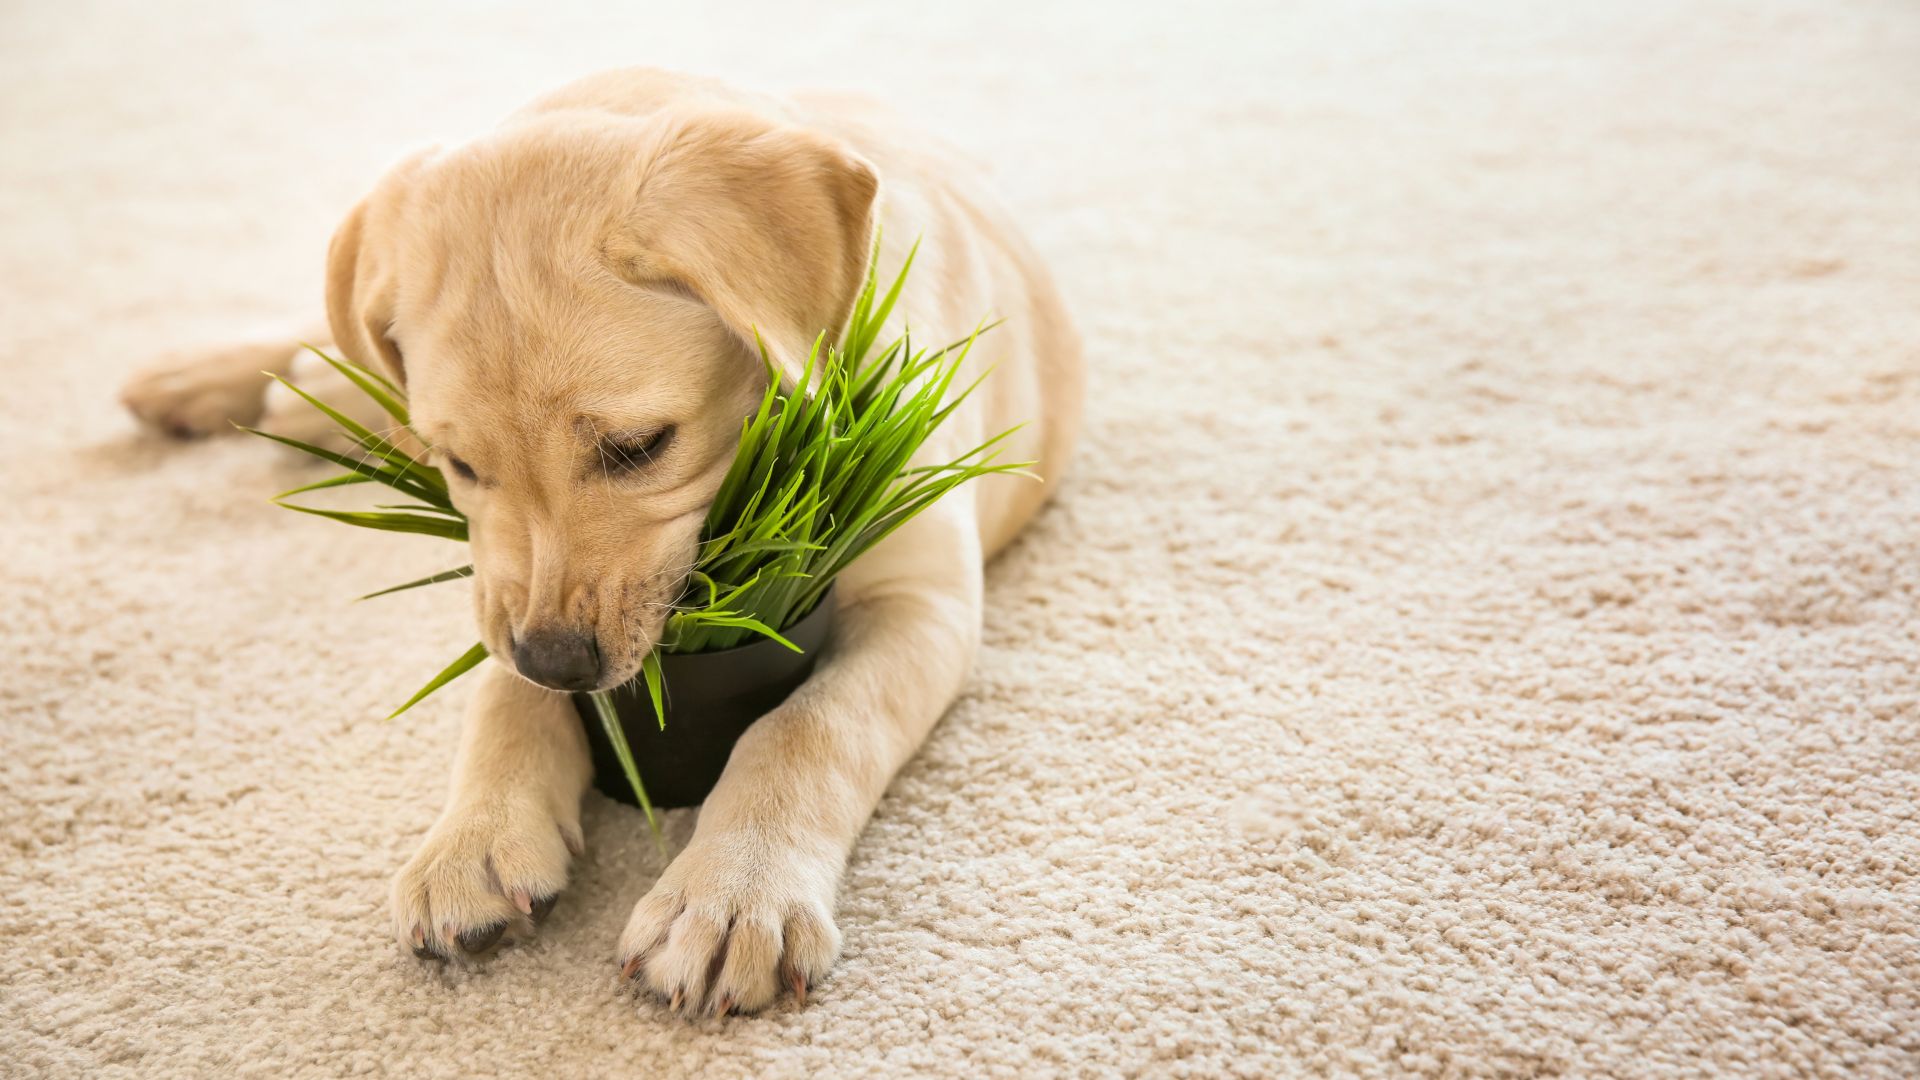 Cucciolo mangia una pianta